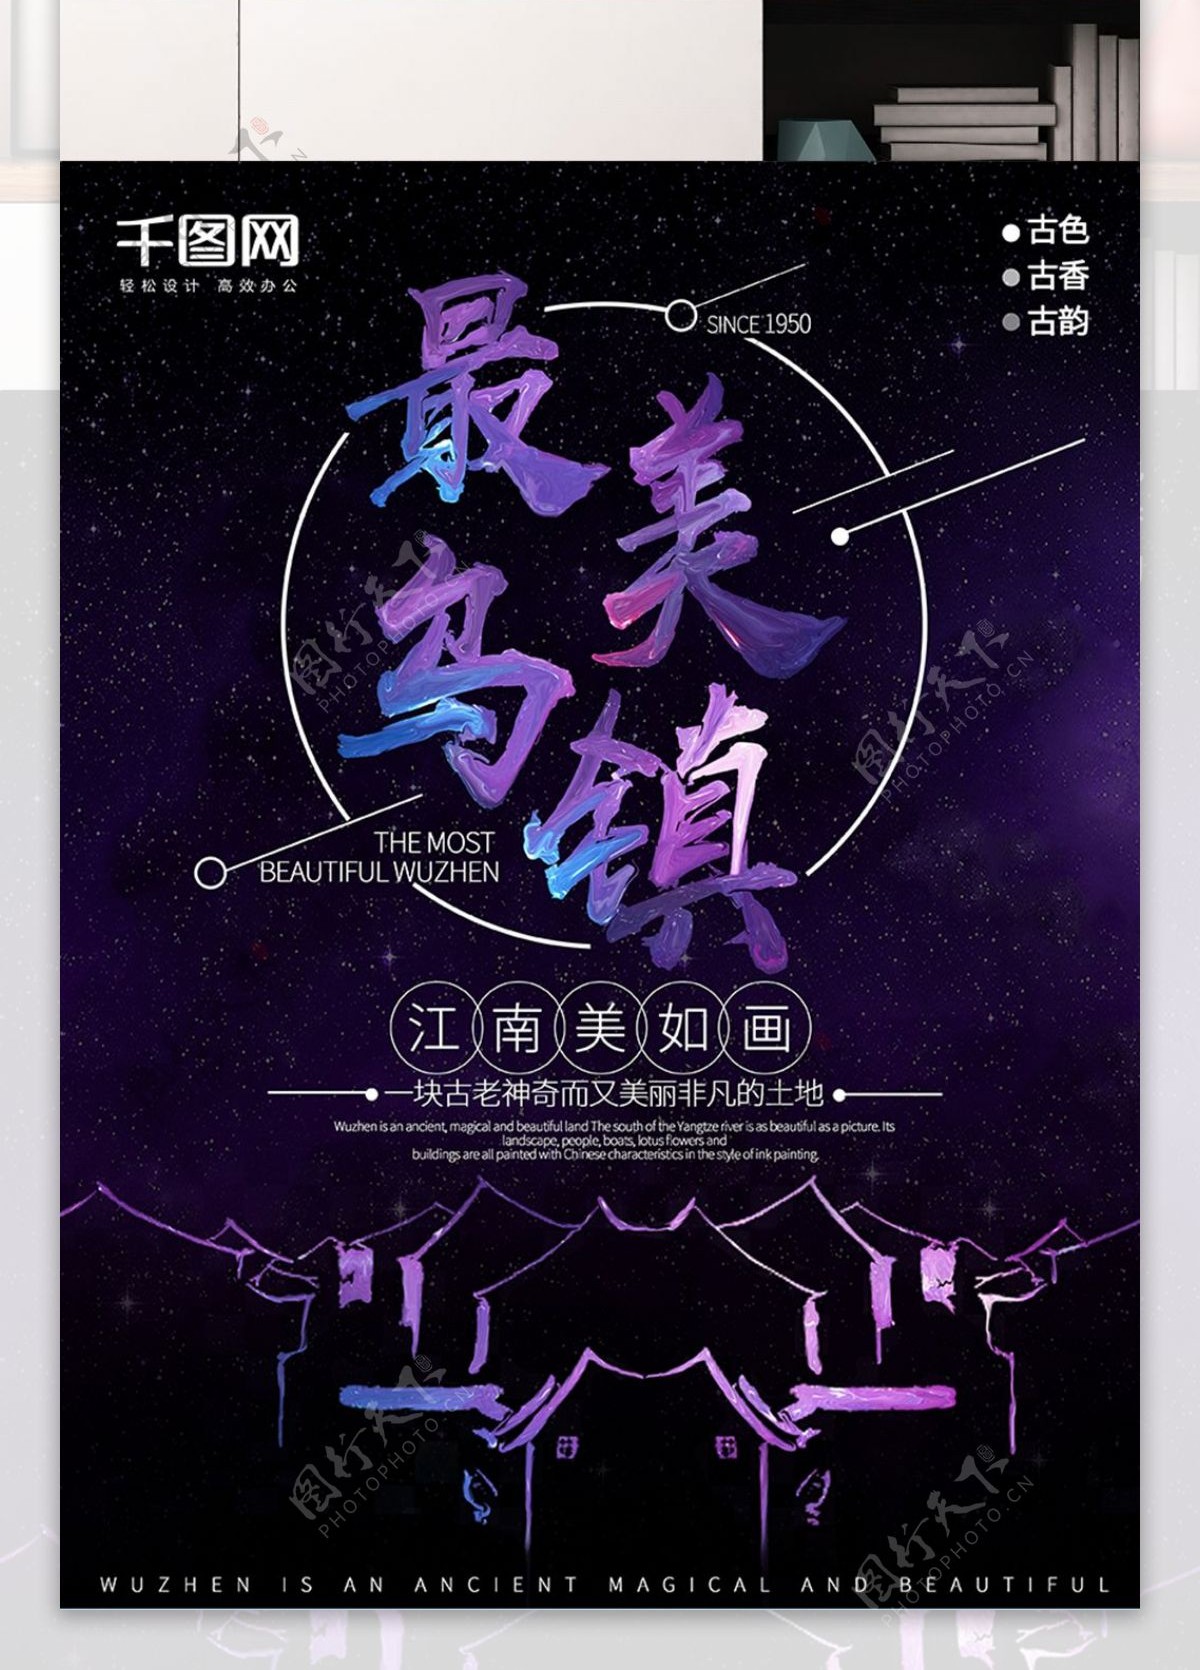 创意紫色油漆色最美乌镇夜景旅游海报